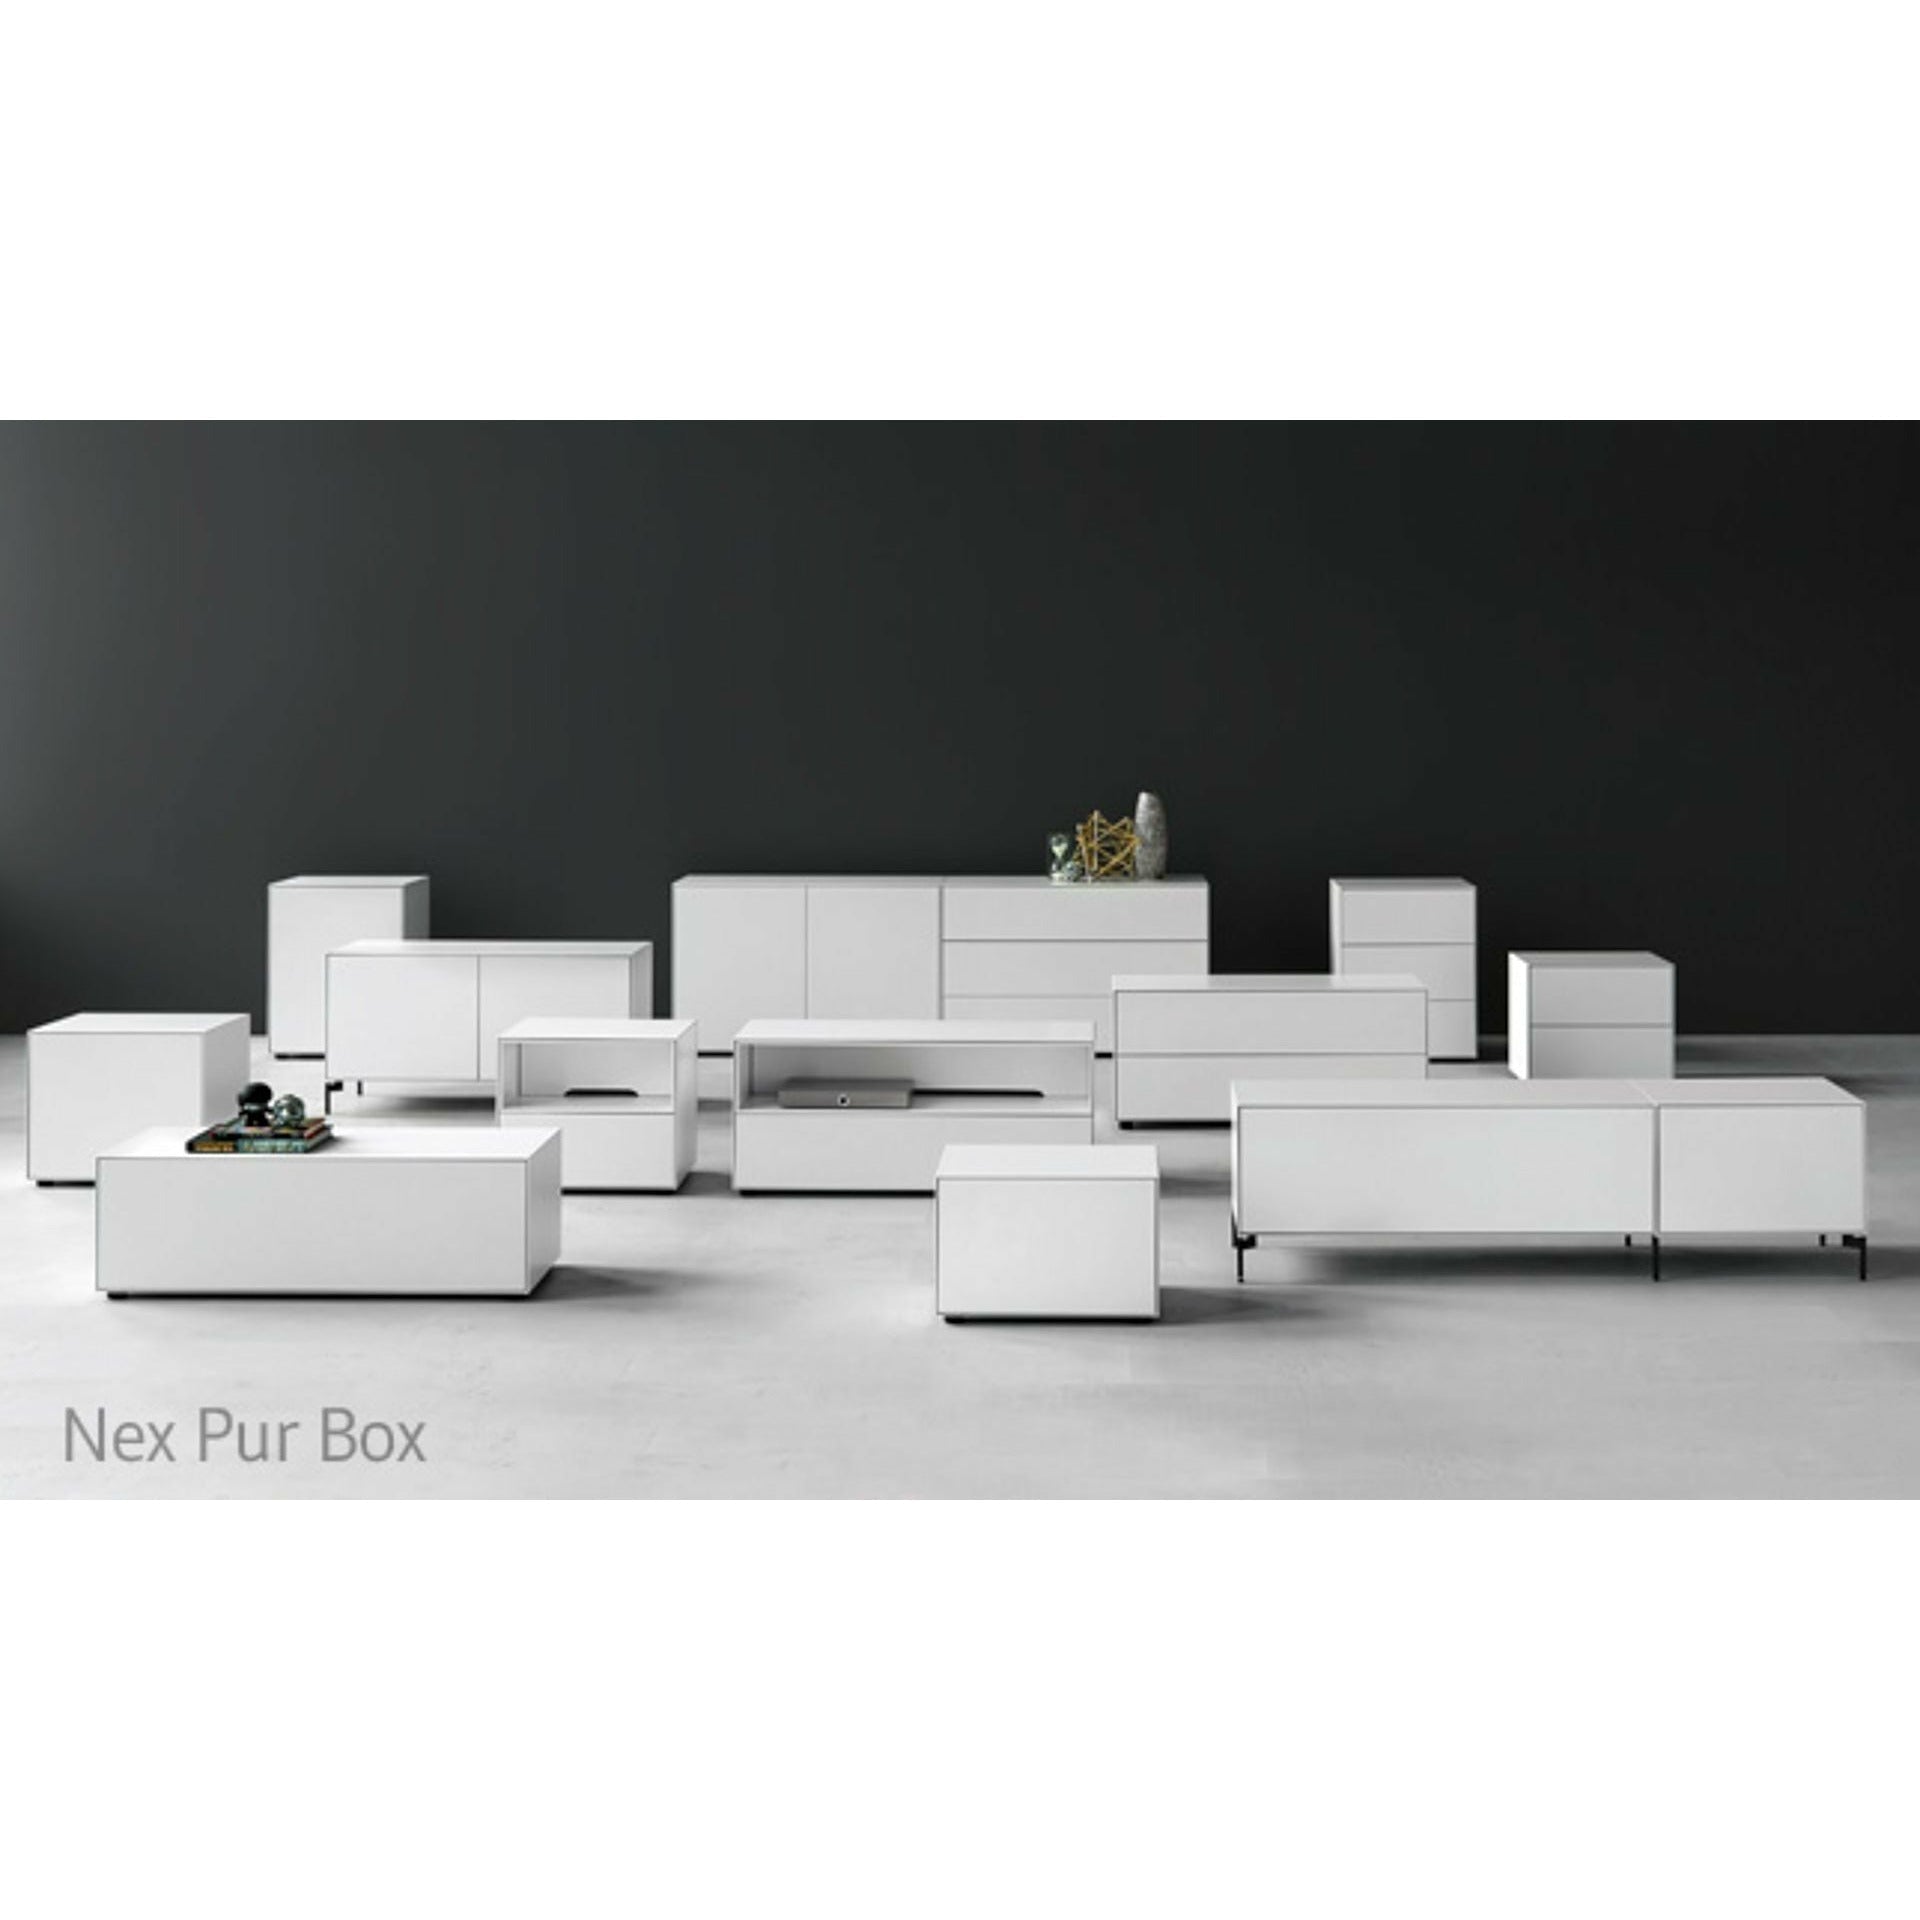 Piure Nex Pur Box Door Hx W 75x120 cm, 1 półka, biała